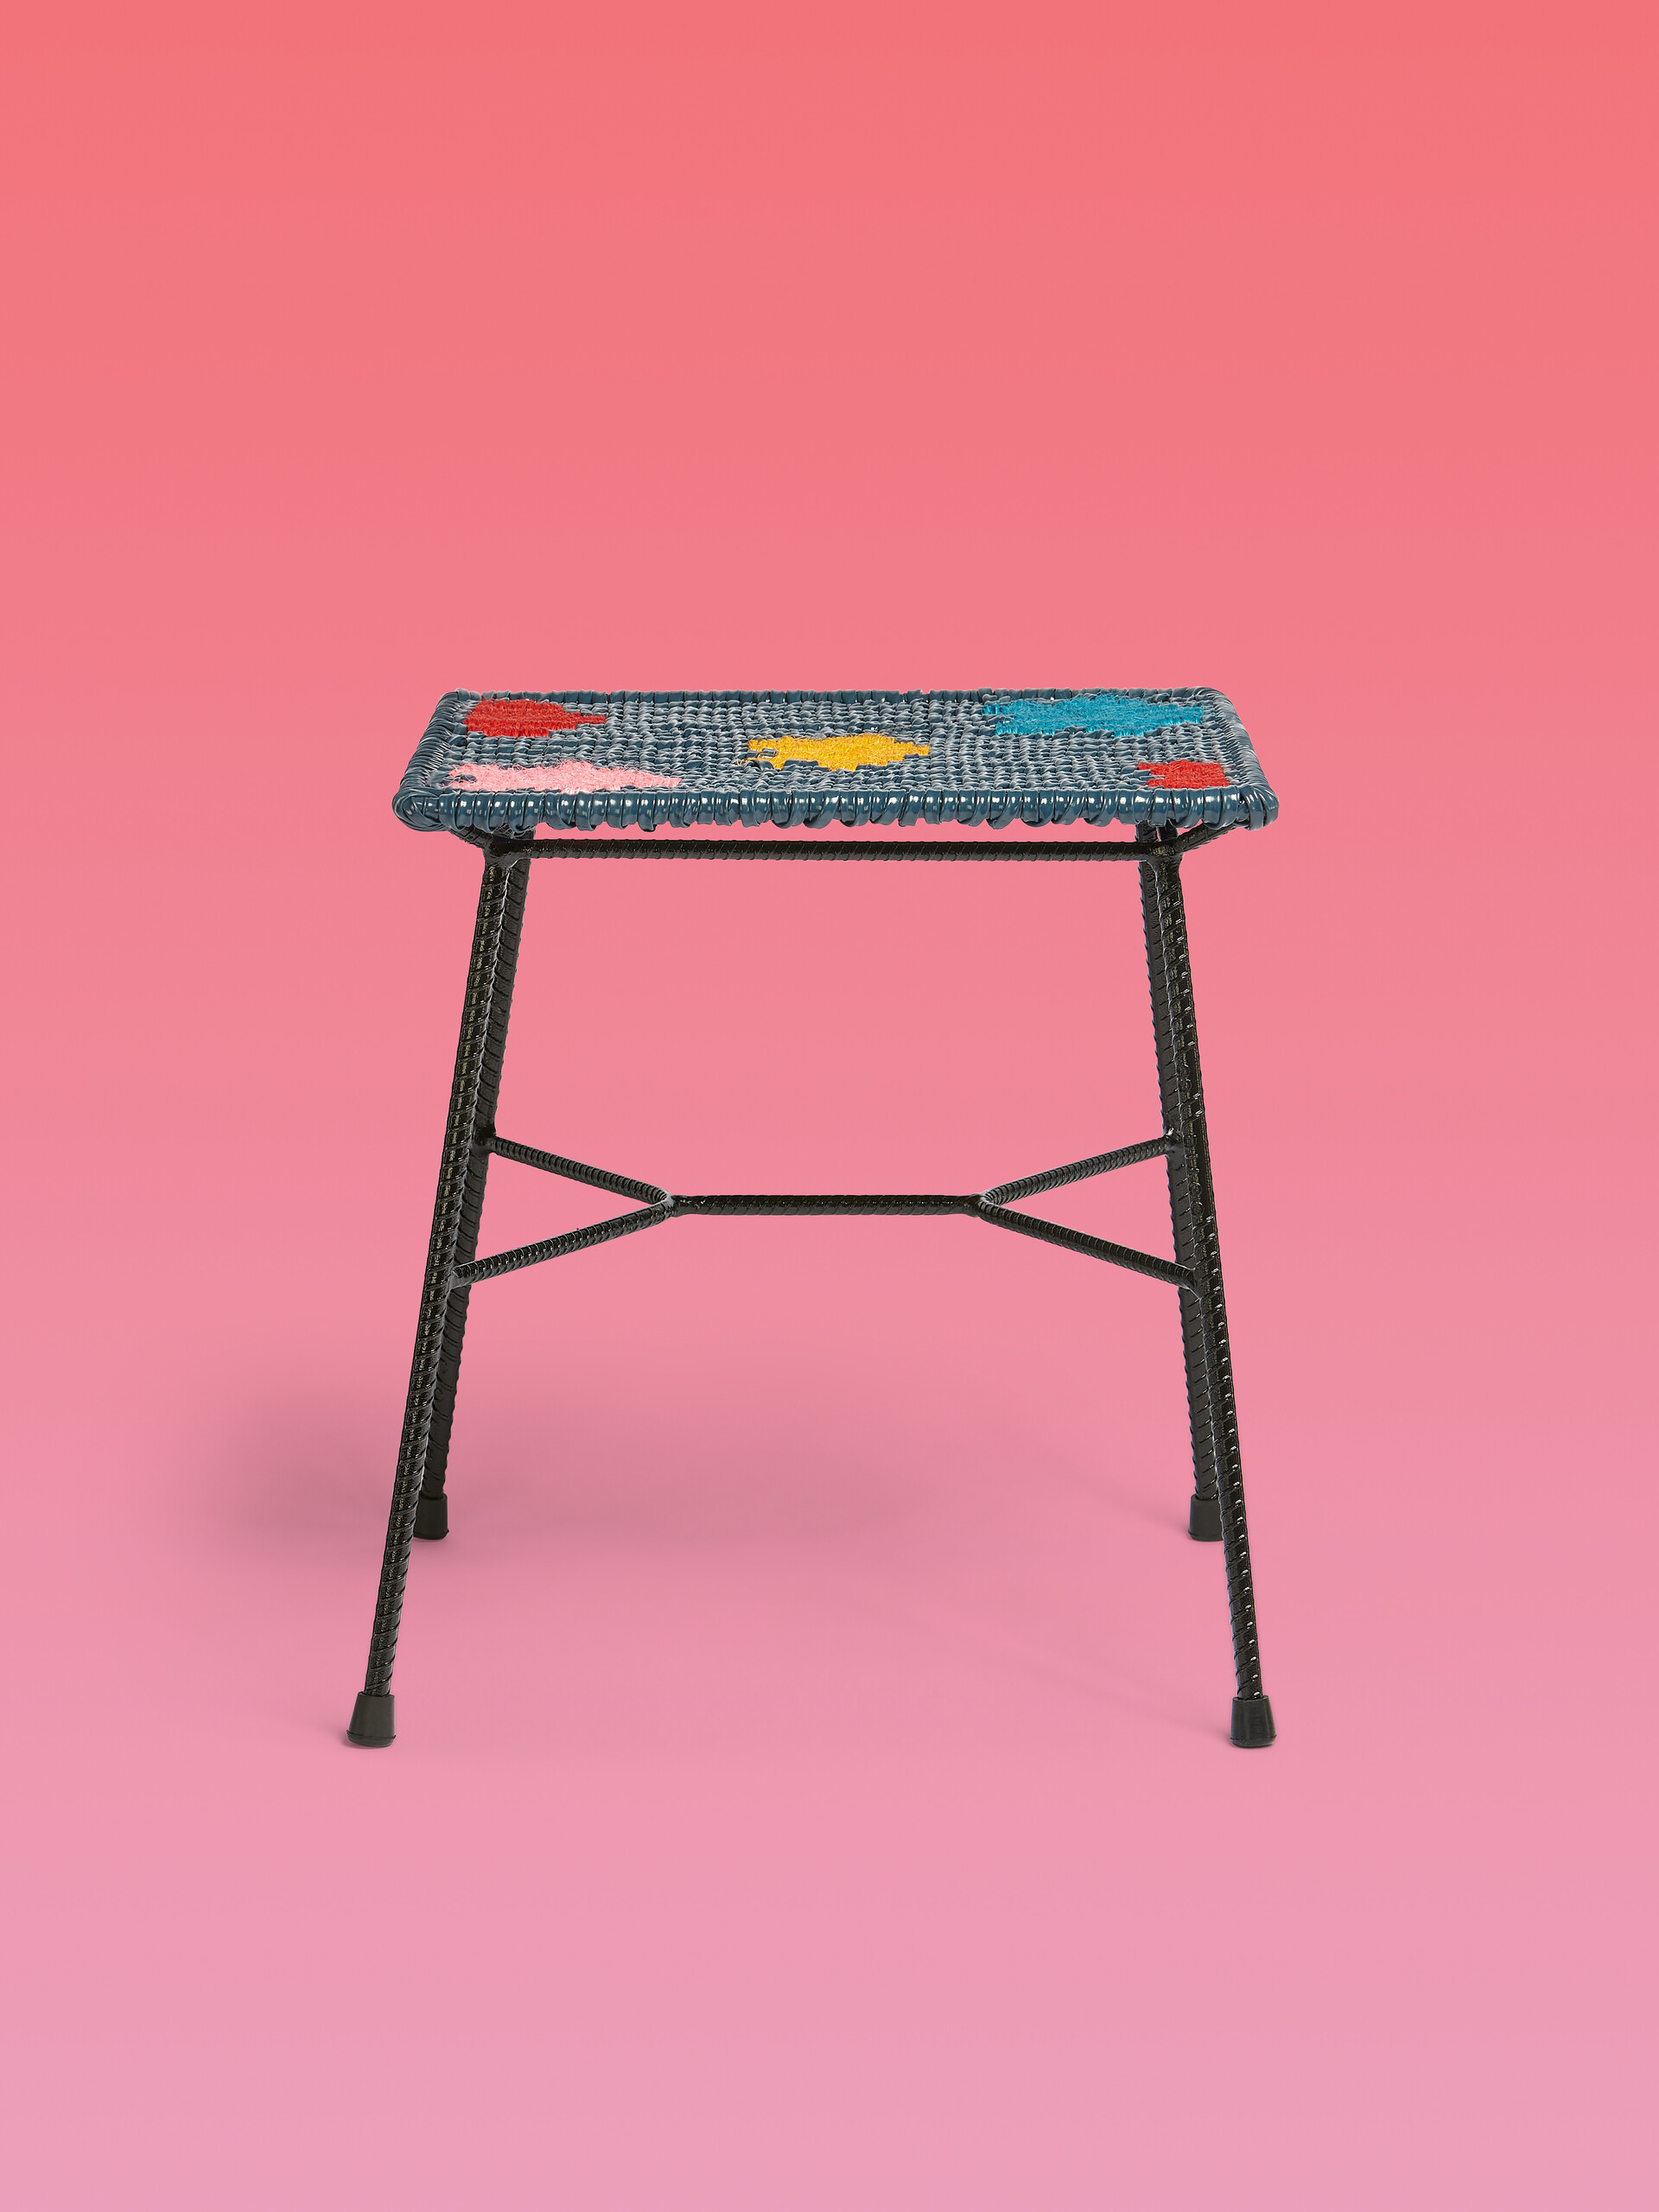 Tabouret-table MARNI MARKET carré en fer et PVC color-block - Mobilier - Image 1